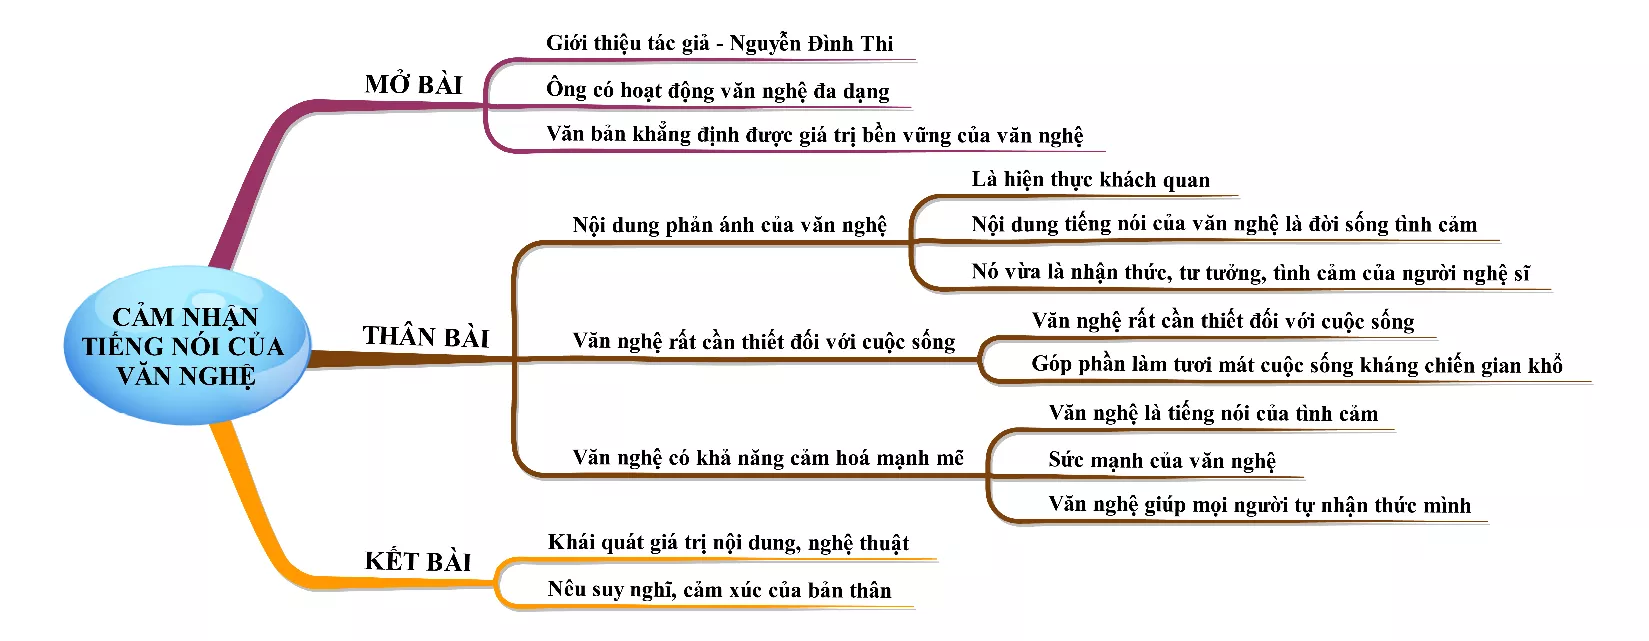 Cảm nhận bài Tiếng nói của văn nghệ năm 2021 Cam Nhan Bai Tieng Noi Cua Van Nghe Nam 2021 18353